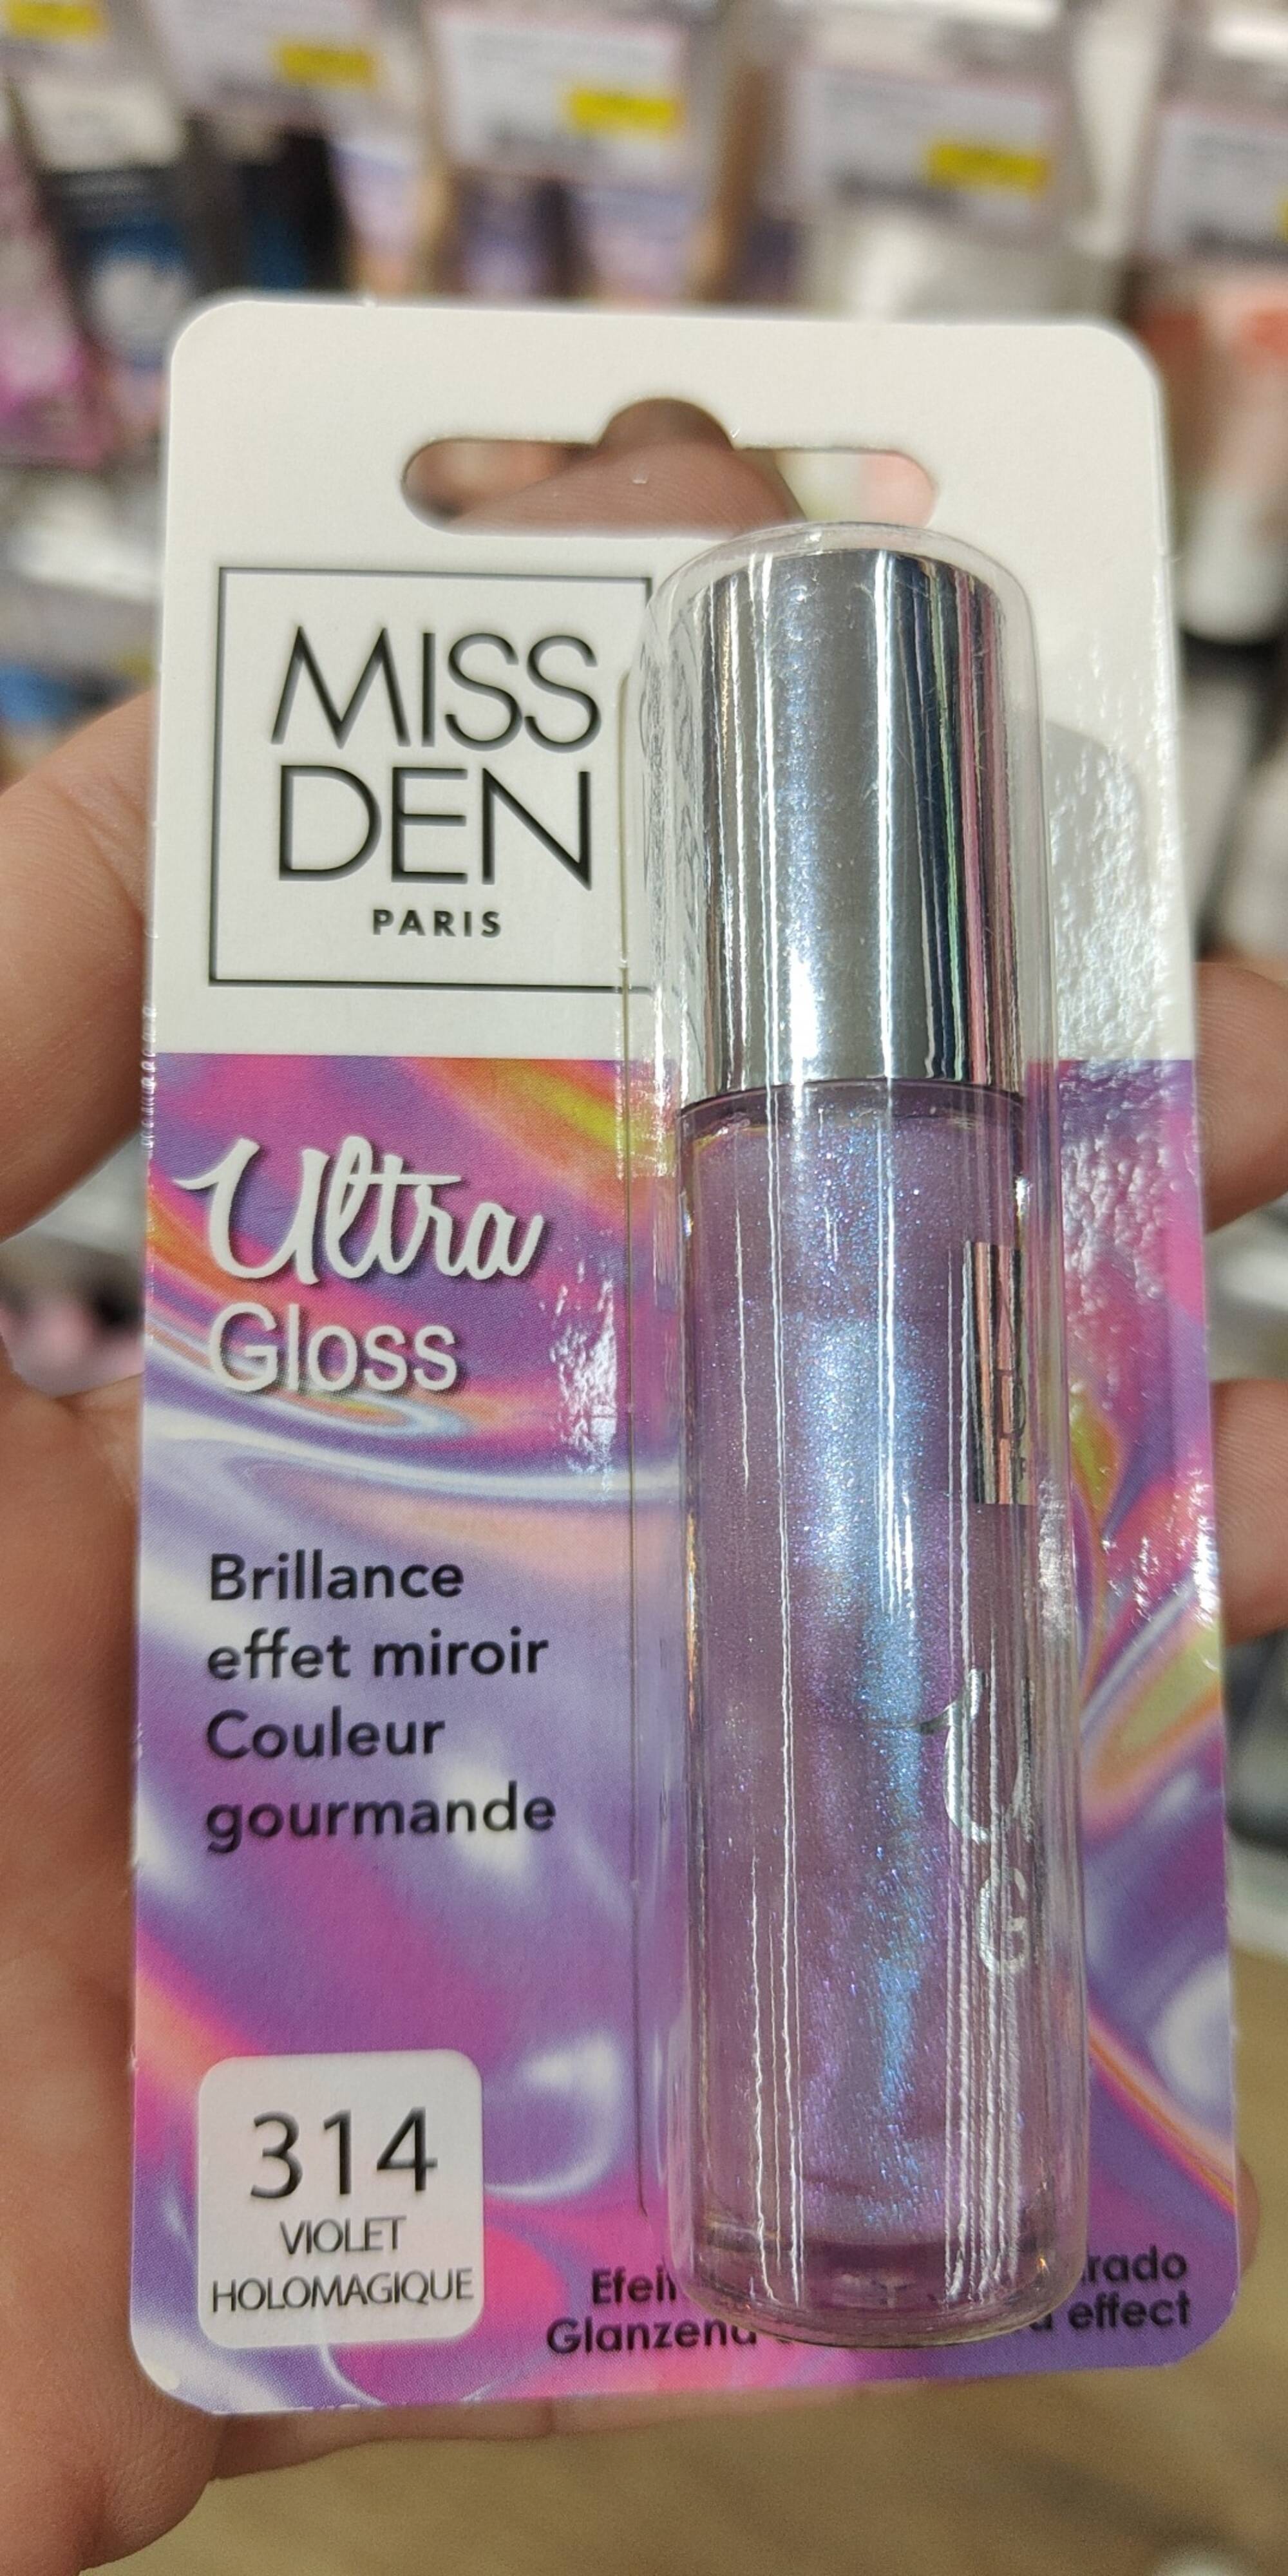 MISS DEN - Ultra gloss 314 violet holomagique brillance effet miroir